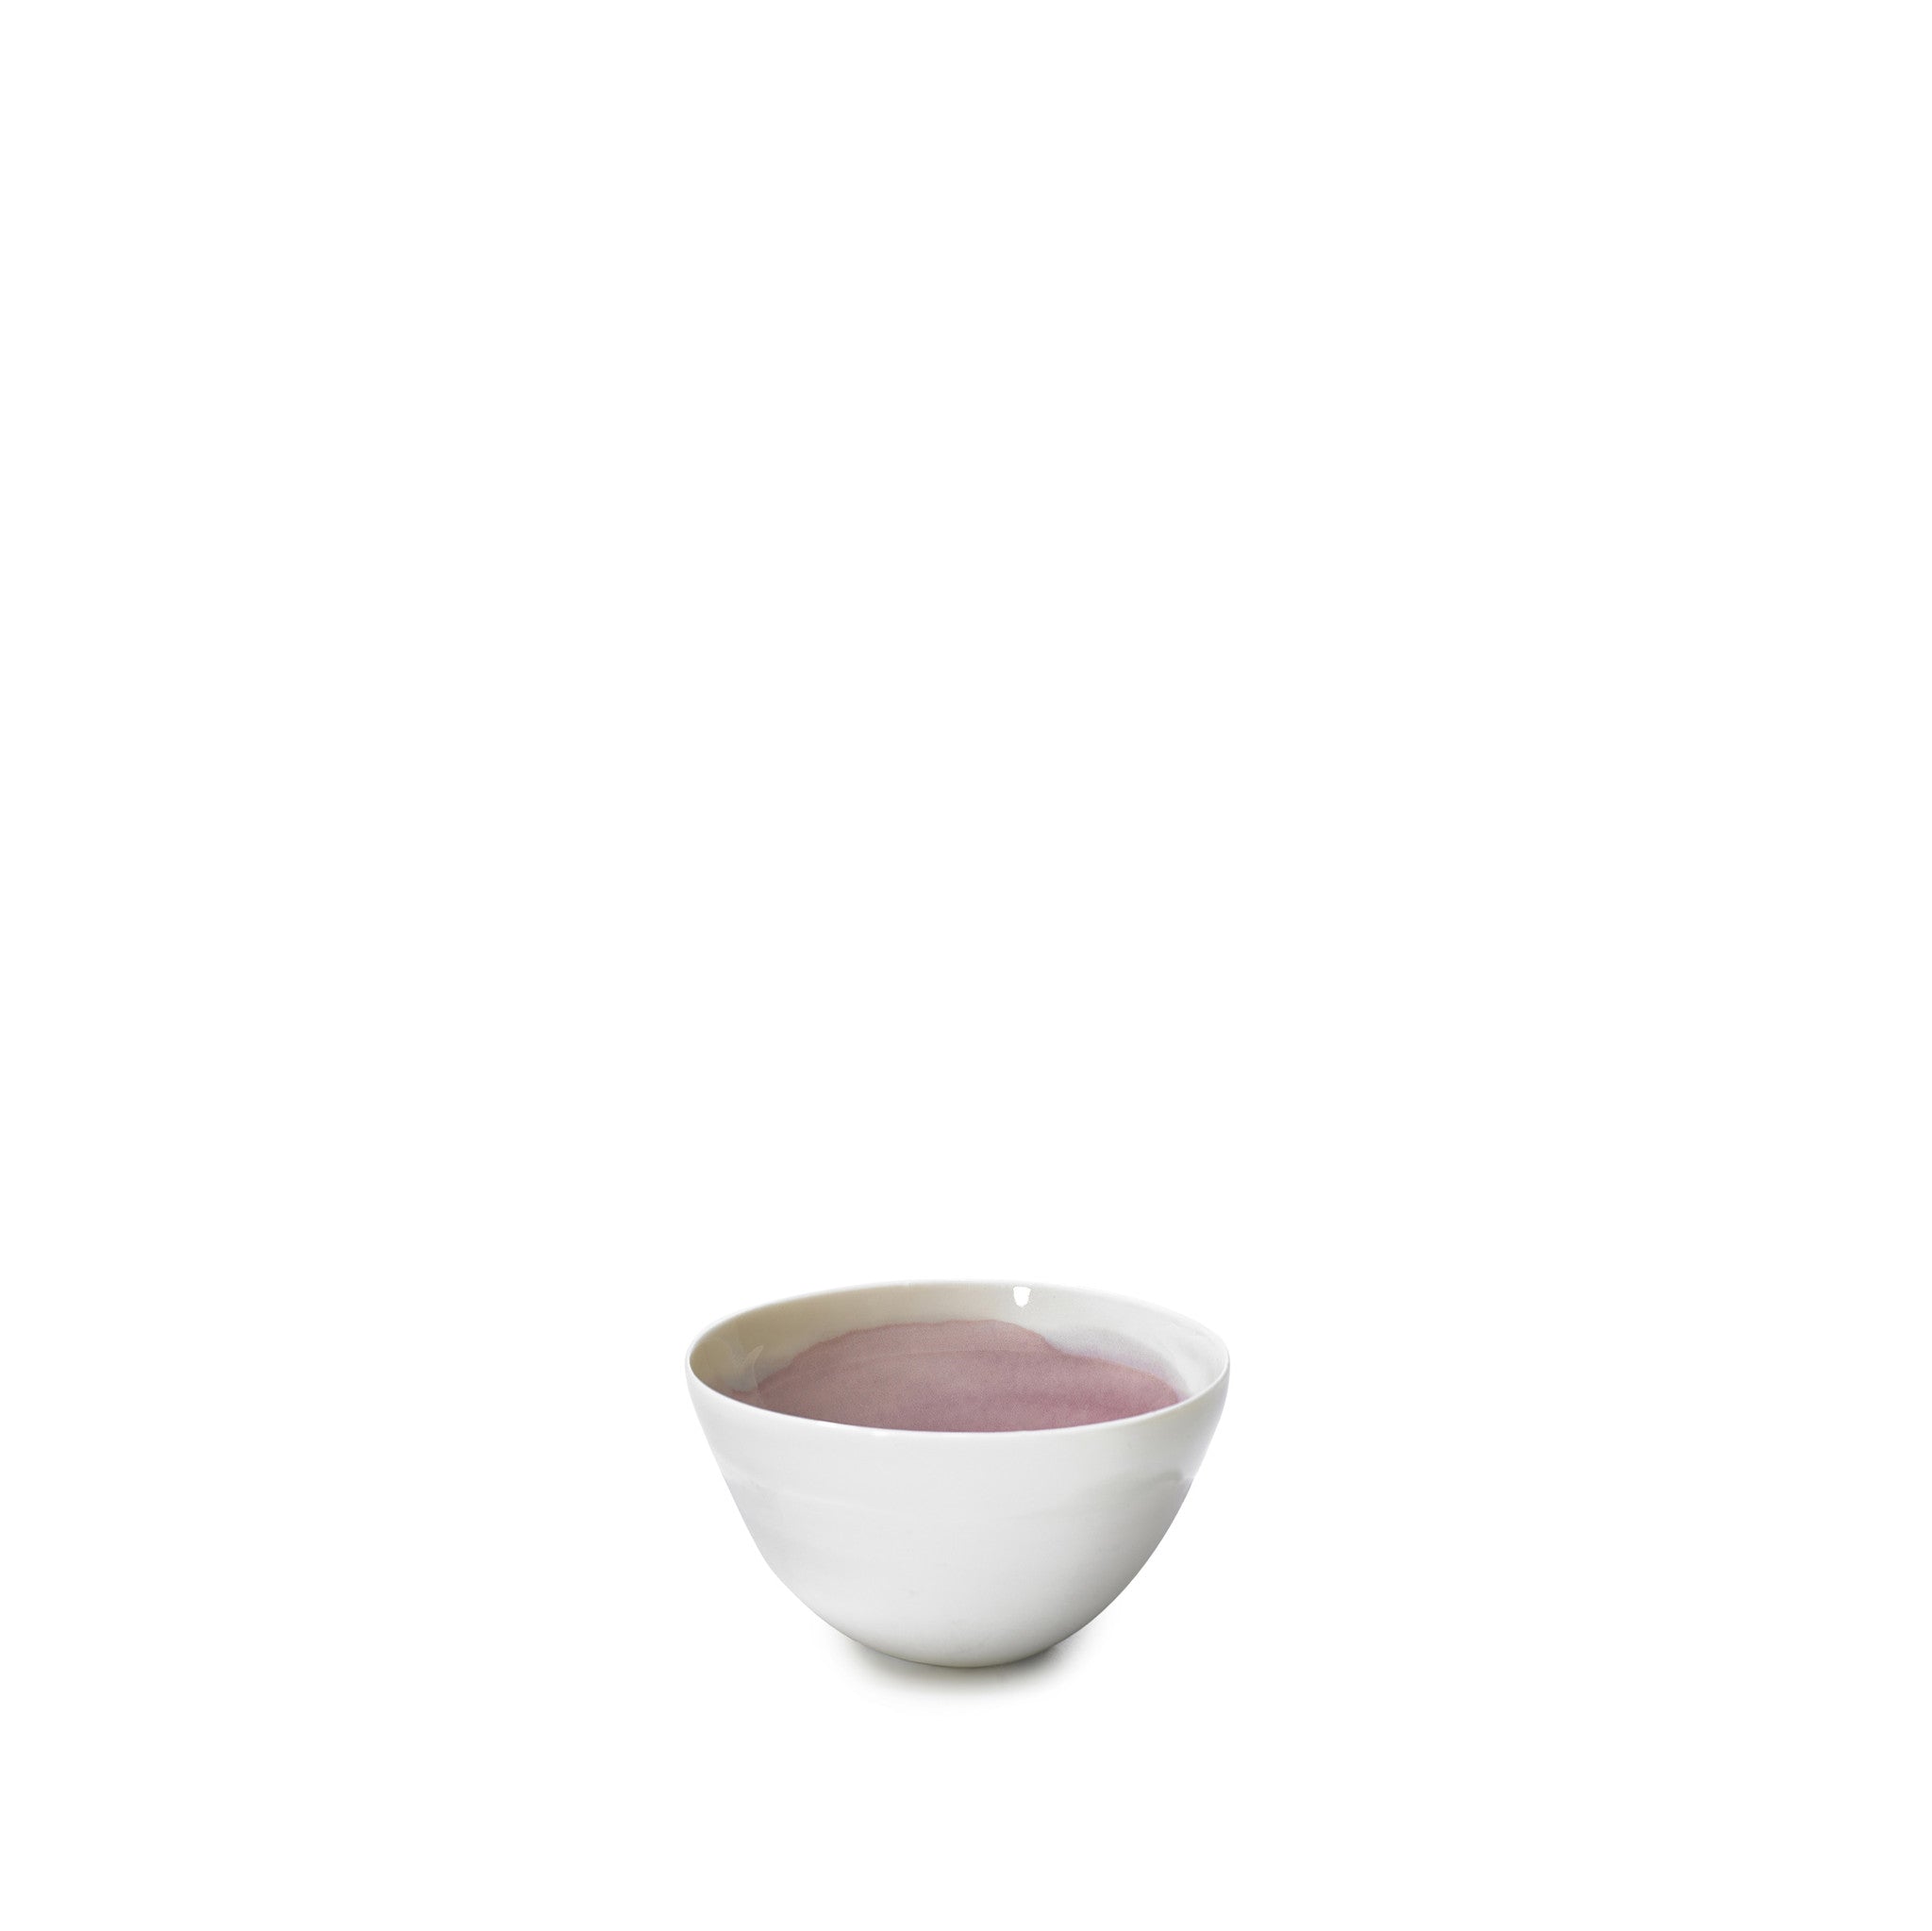 Small Grape Purple Ceramic Bowl with White Edge, 8cm